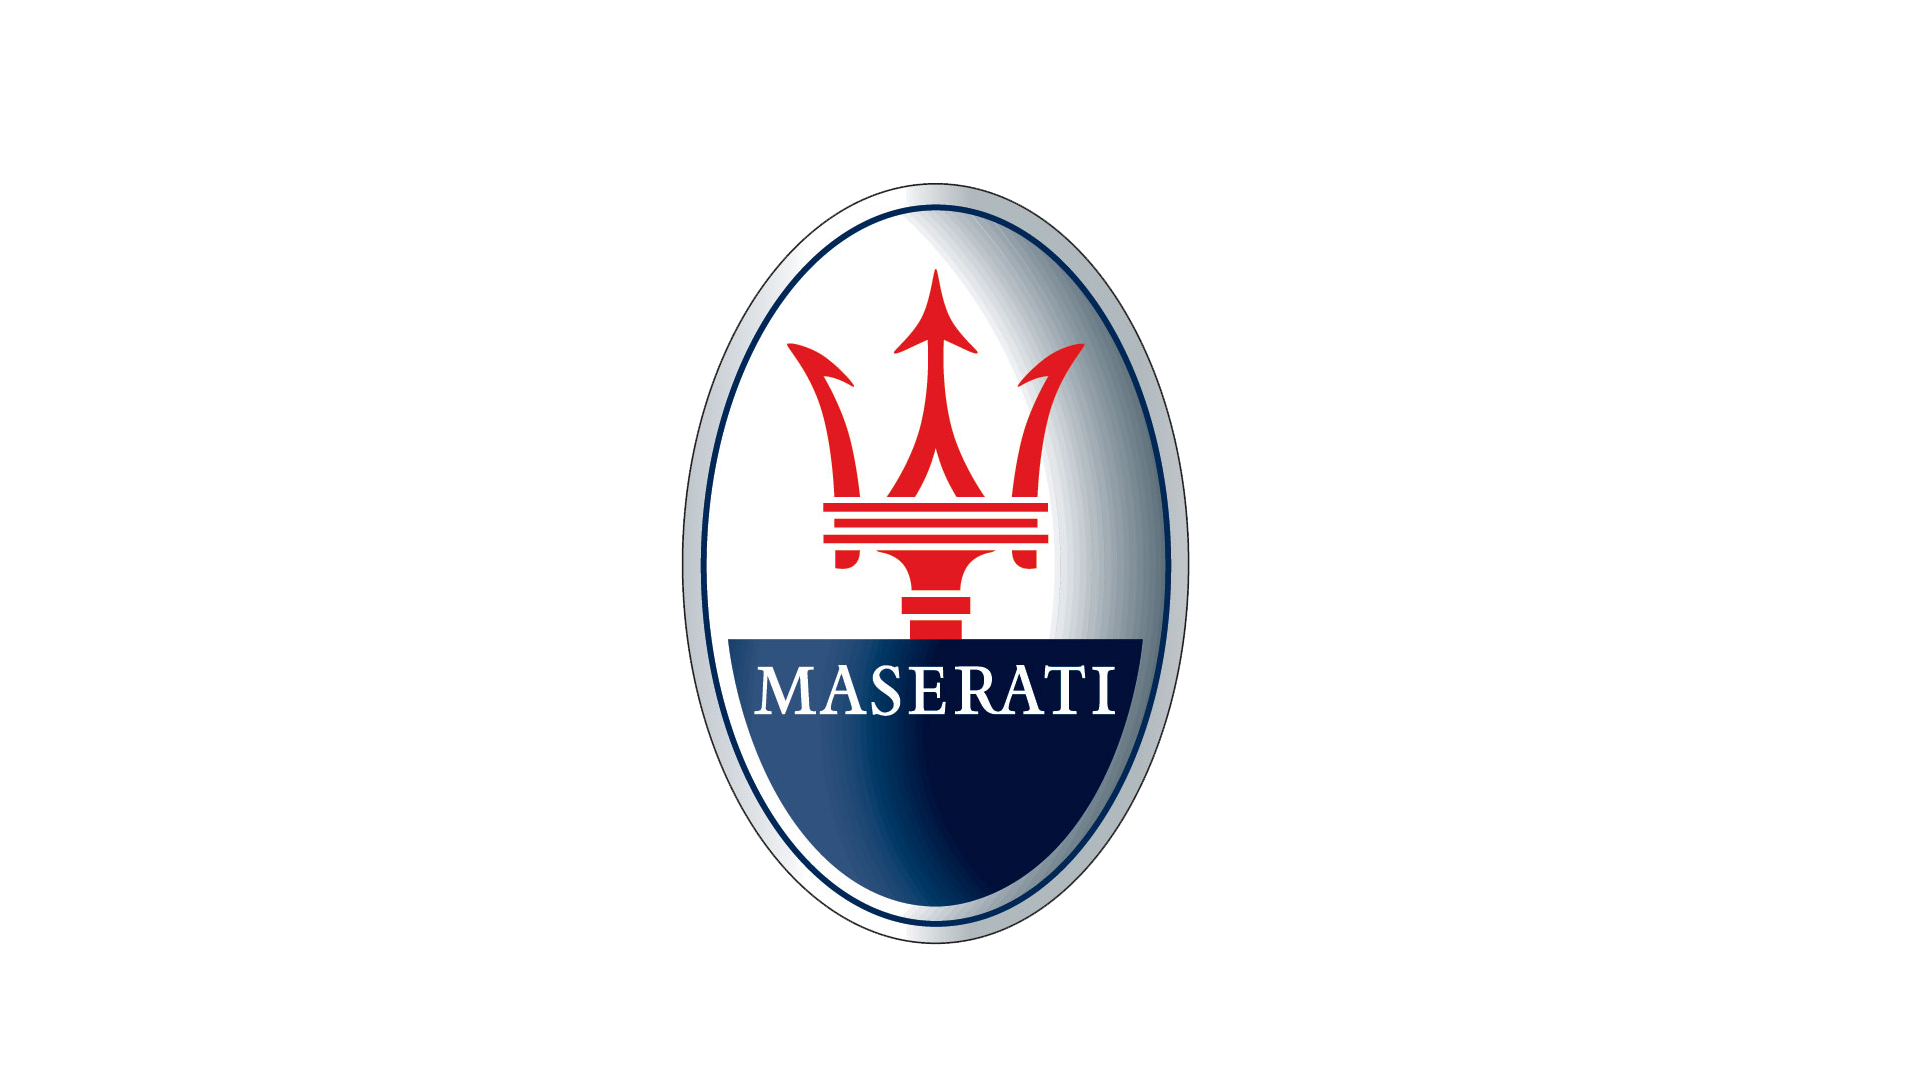 Maserati-symbol-1920x1080-1